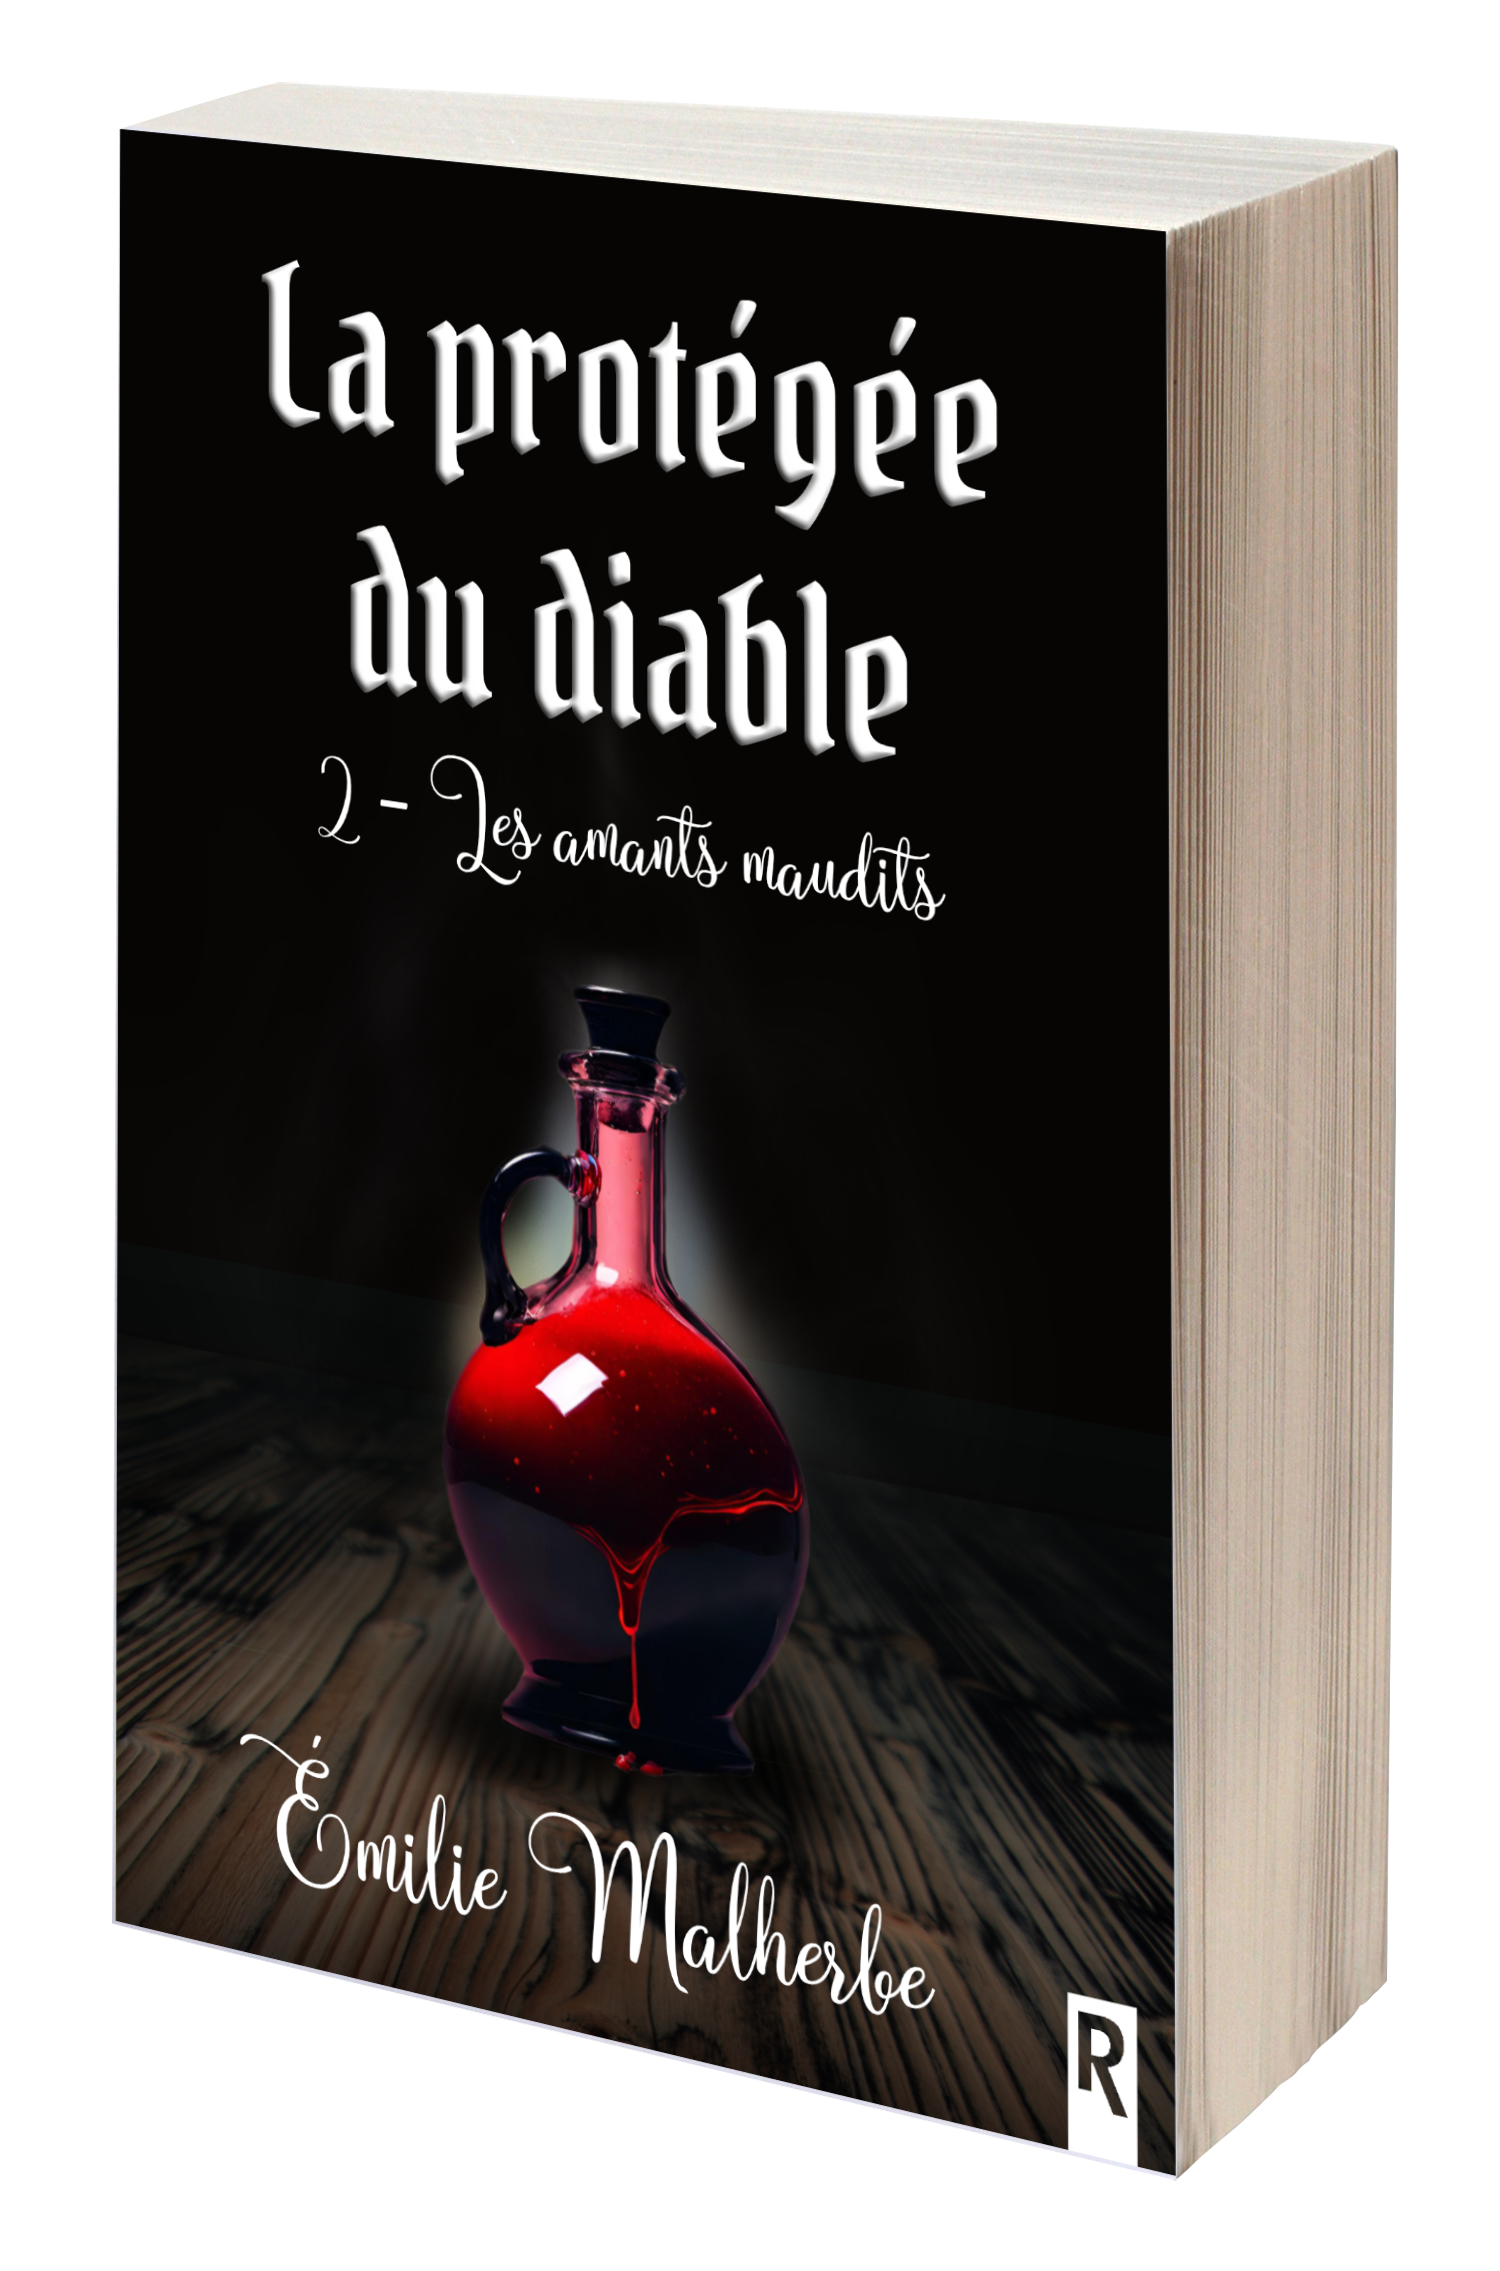 La protégée du diable d'Emilie Malherbe, une trilogie fantastique à inspiration gothique où il est question de vampires, de sorciers et de guerriers.